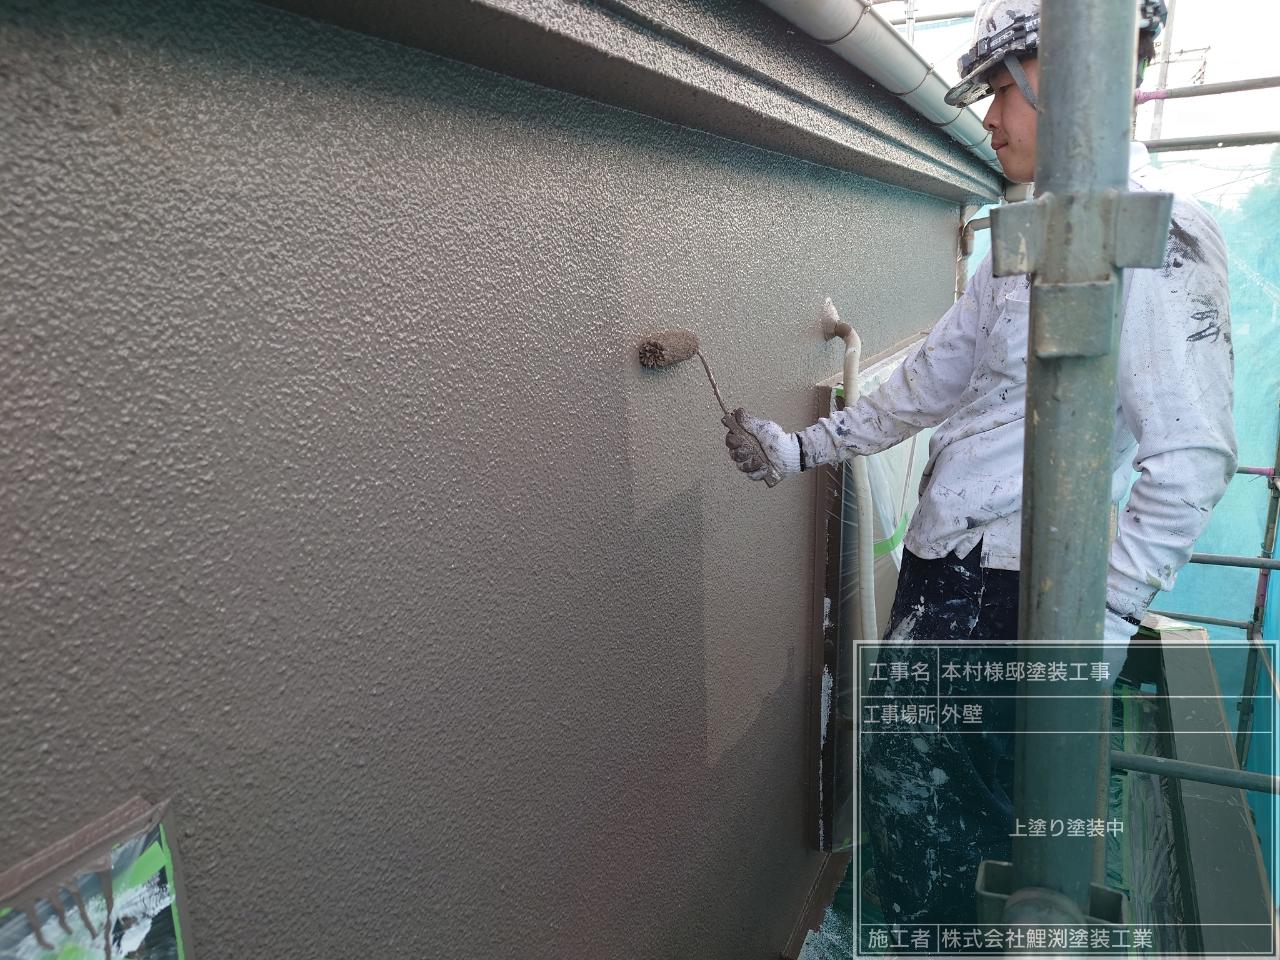 埼玉県坂戸市で外壁の上塗り塗装をしました。